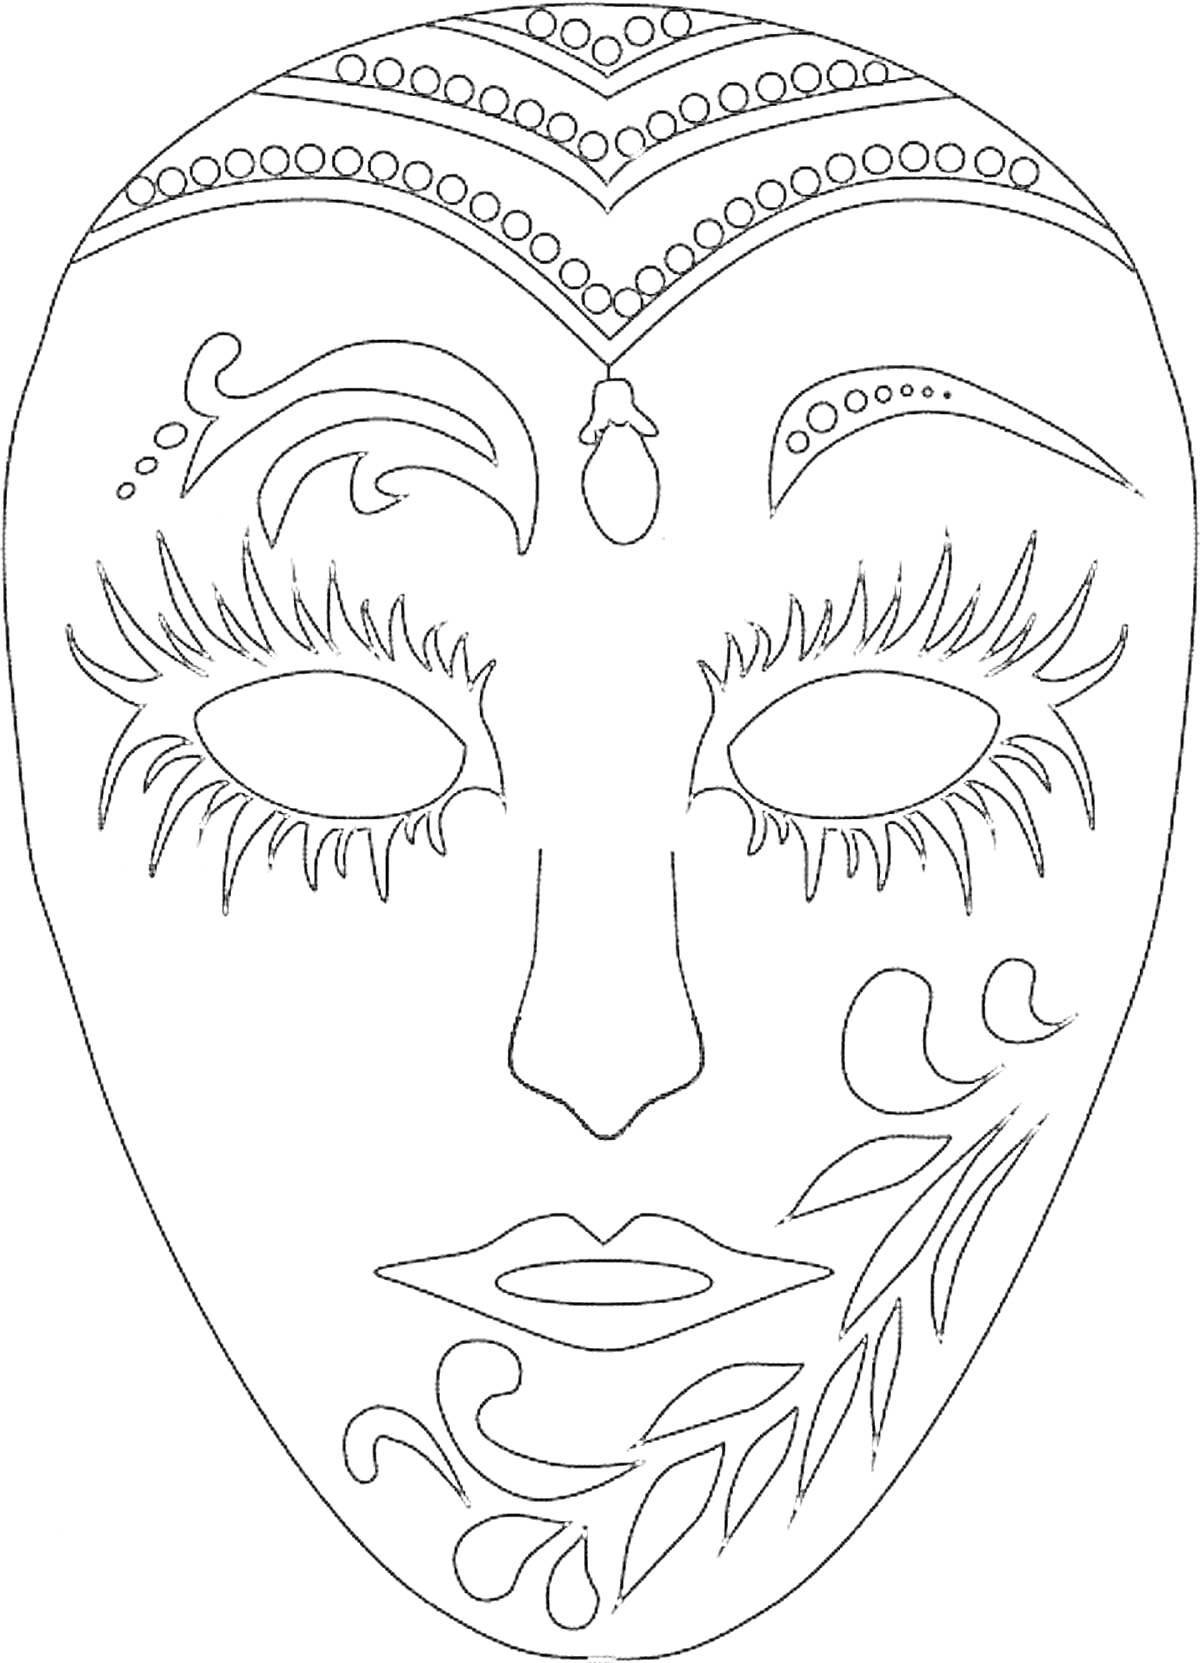 Маска для лица с растительным орнаментом, декоративными узорами, линями и деталями на лбу, около глаз и на щеке